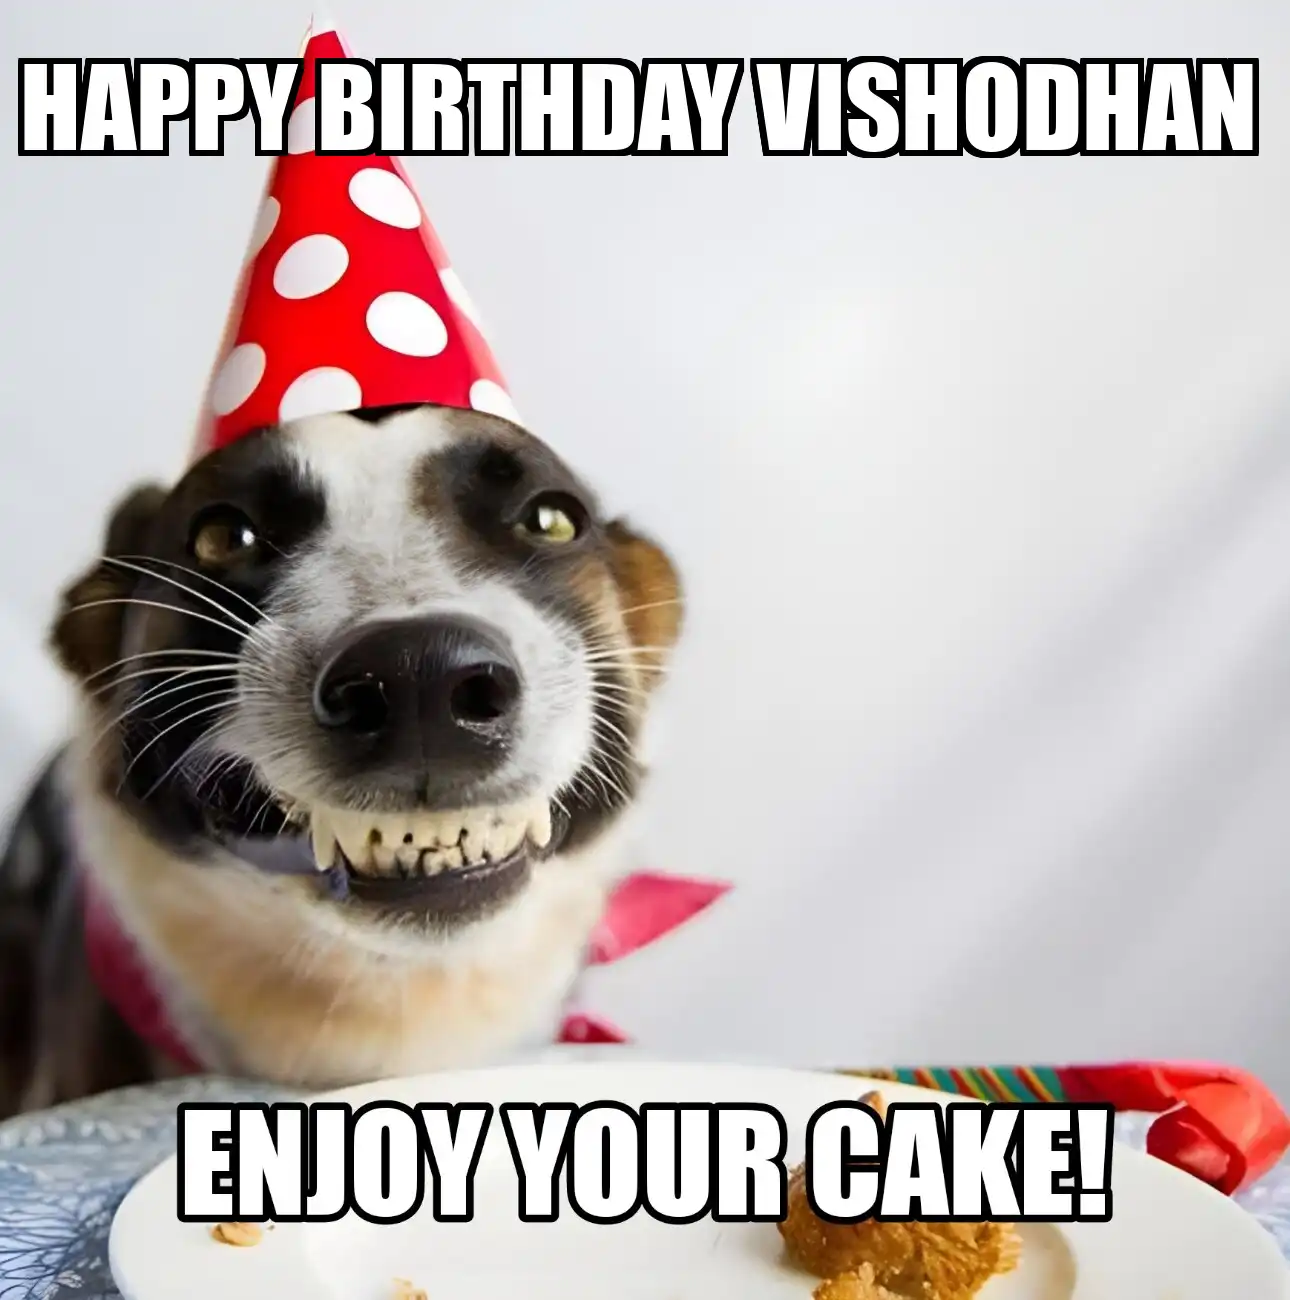 Happy Birthday Vishodhan Enjoy Your Cake Dog Meme